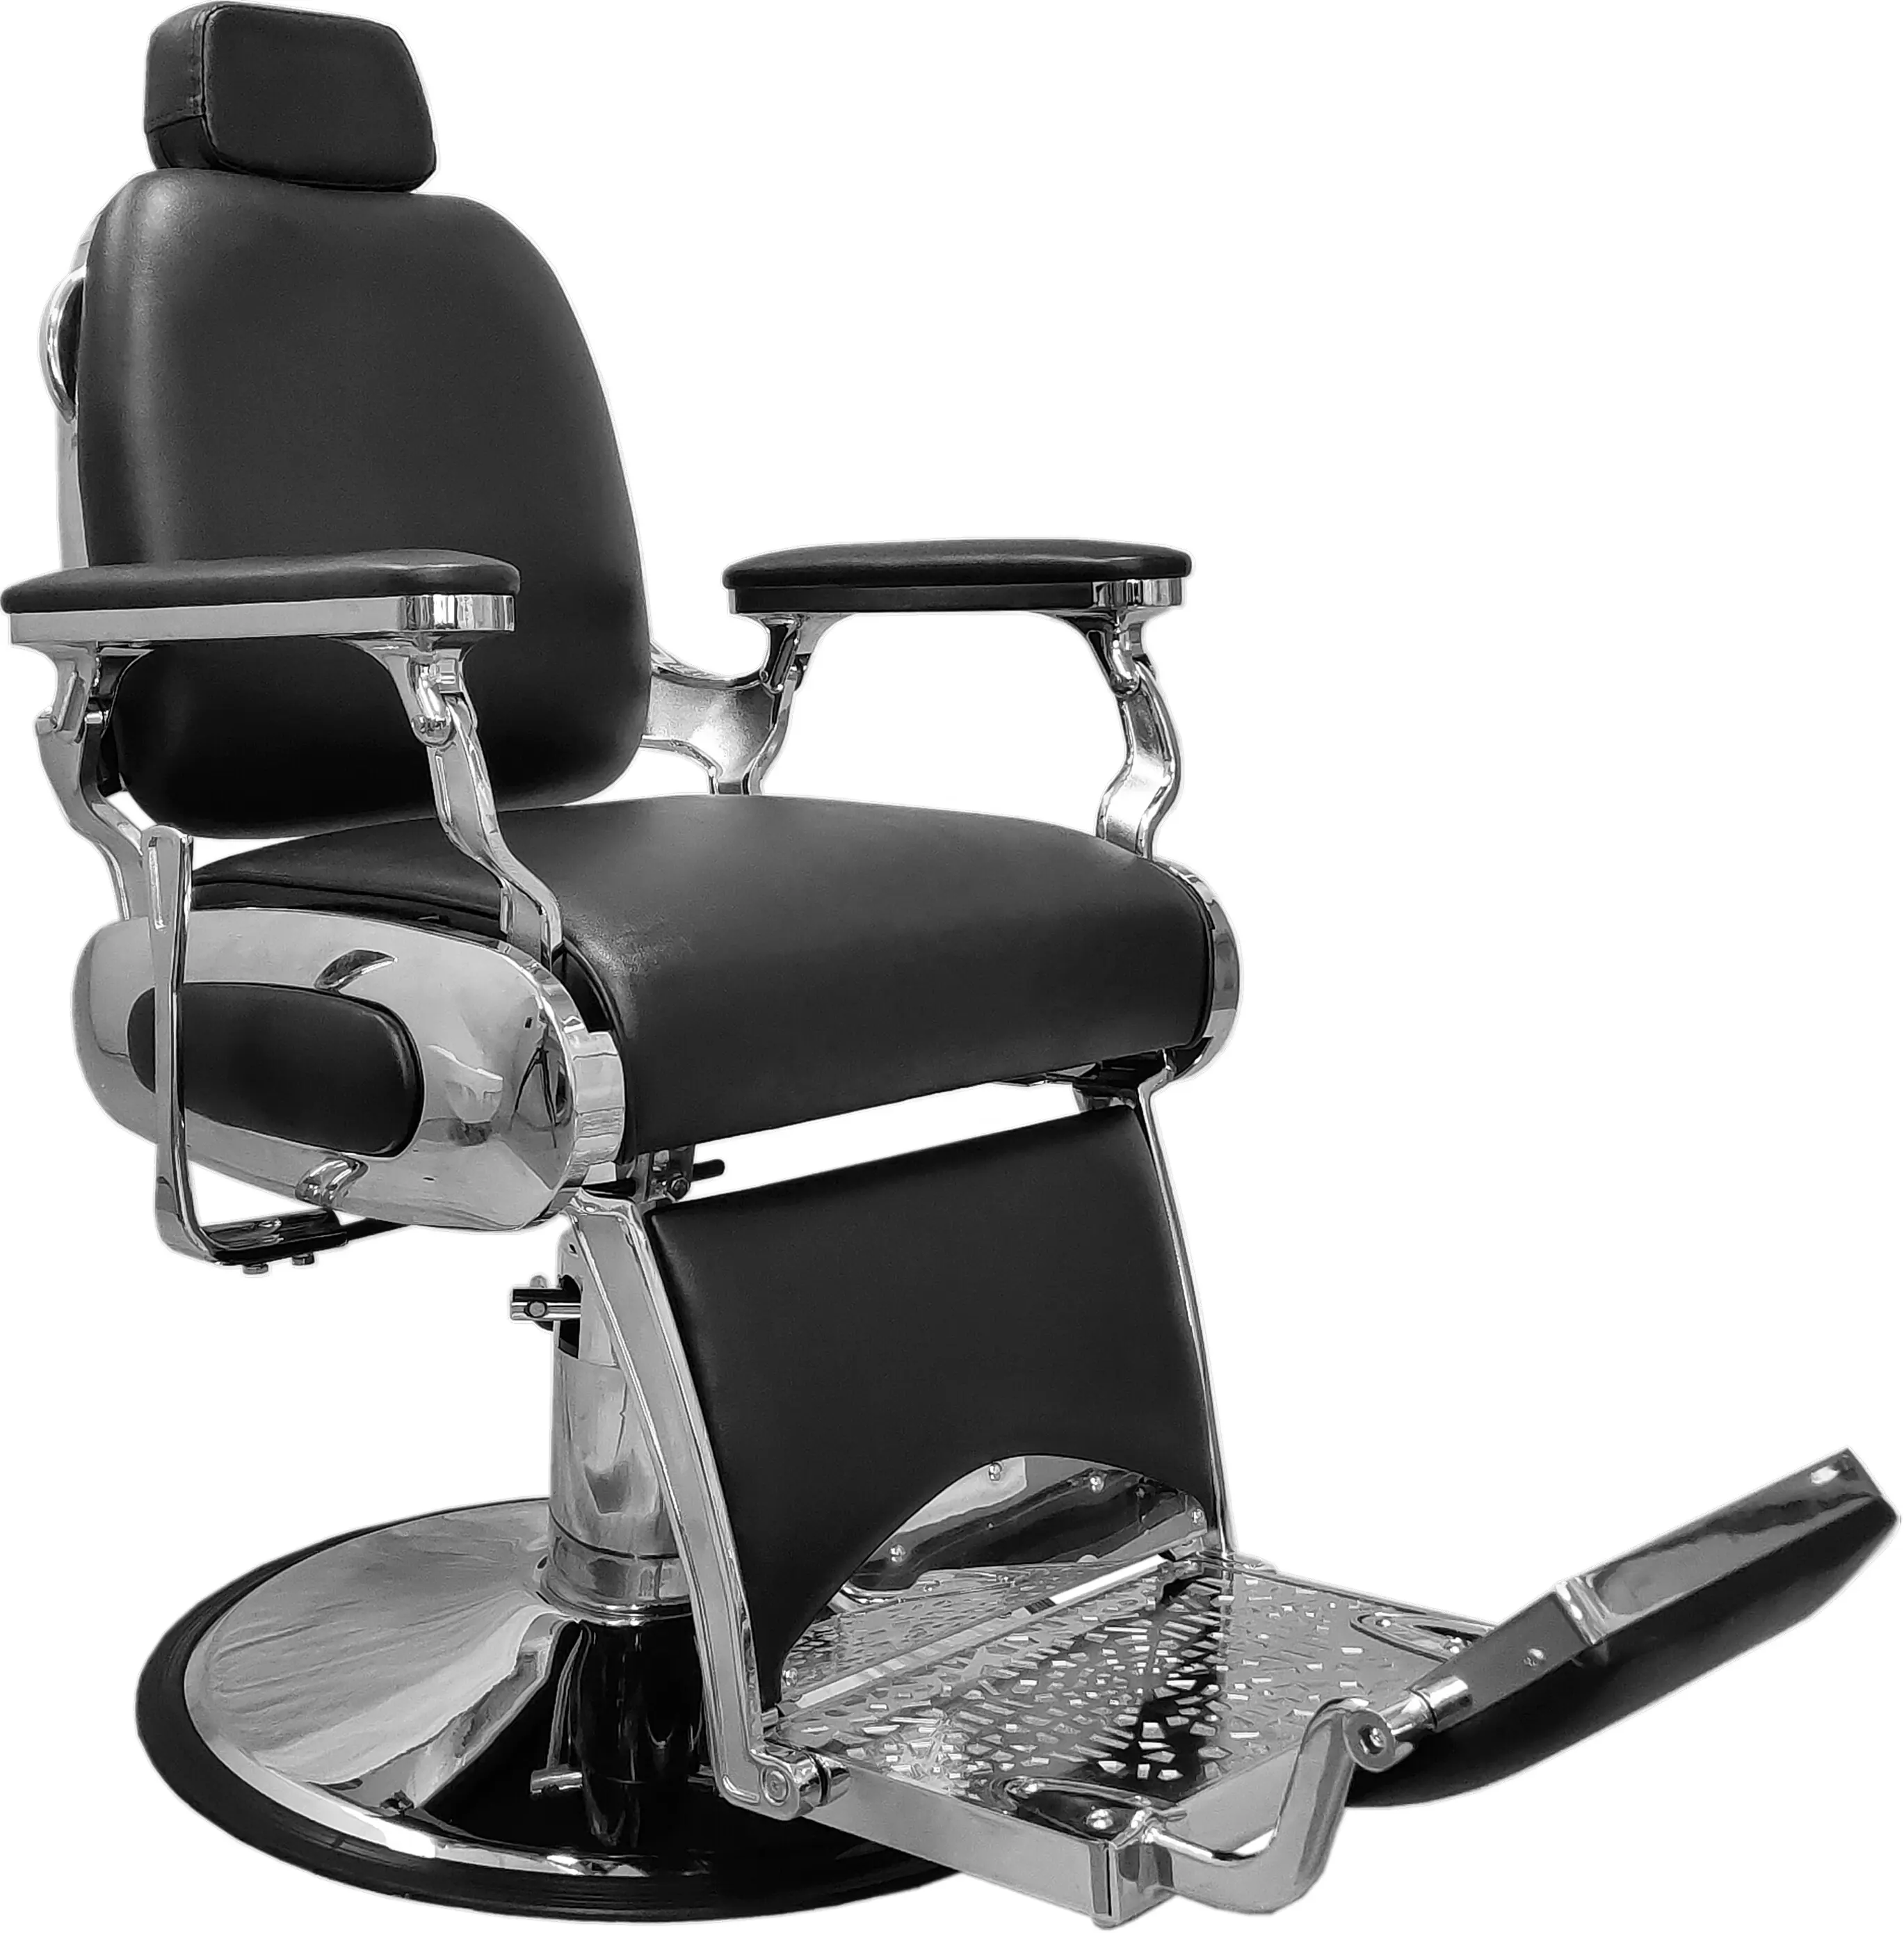 Takara belmont-Silla de peluquero clásica de alta calidad, sillón especial para peluquería